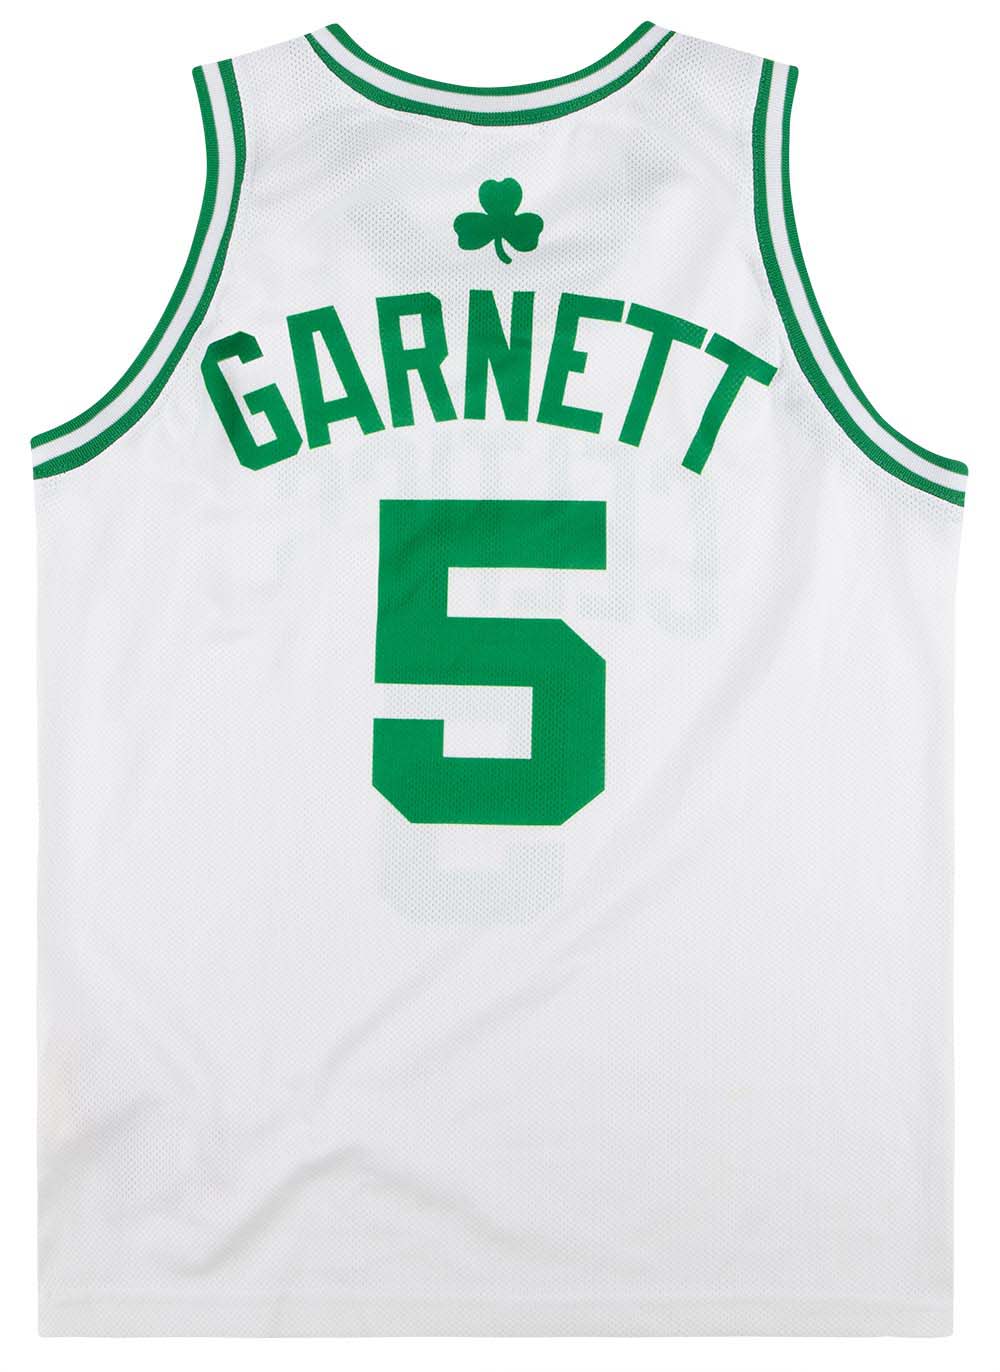 Boston Celtics jersey Kevin Garnett 5 green